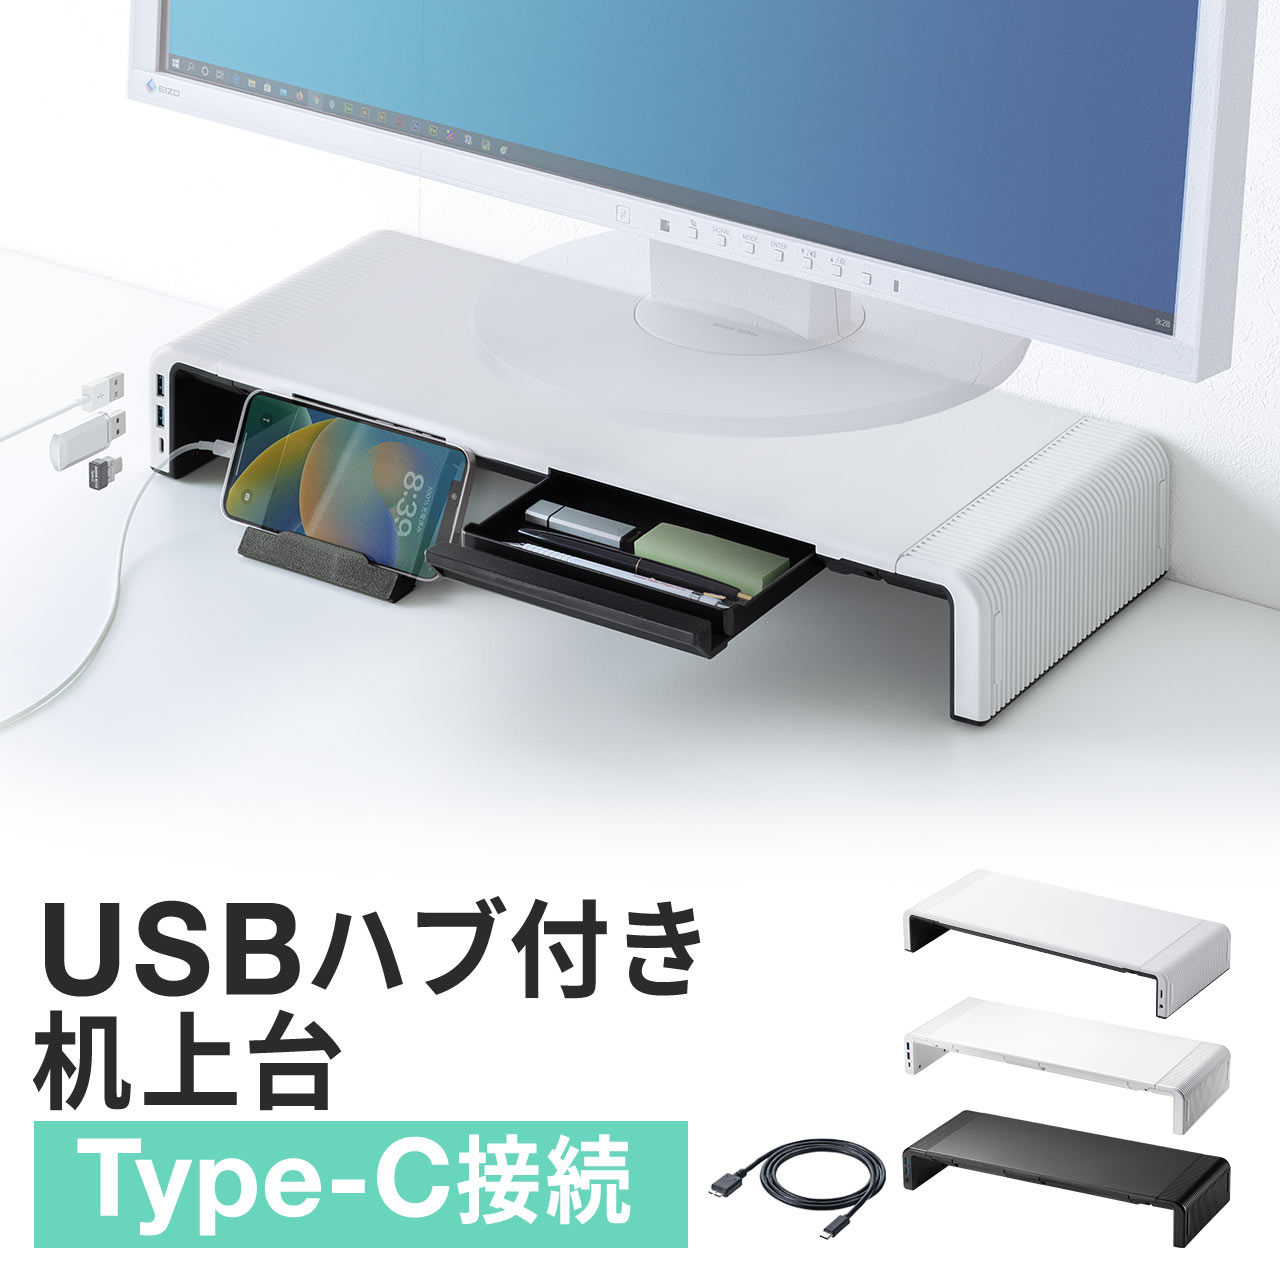 サンワダイレクト モニター台 USBハブ3ポート+電源タップ2個口付き